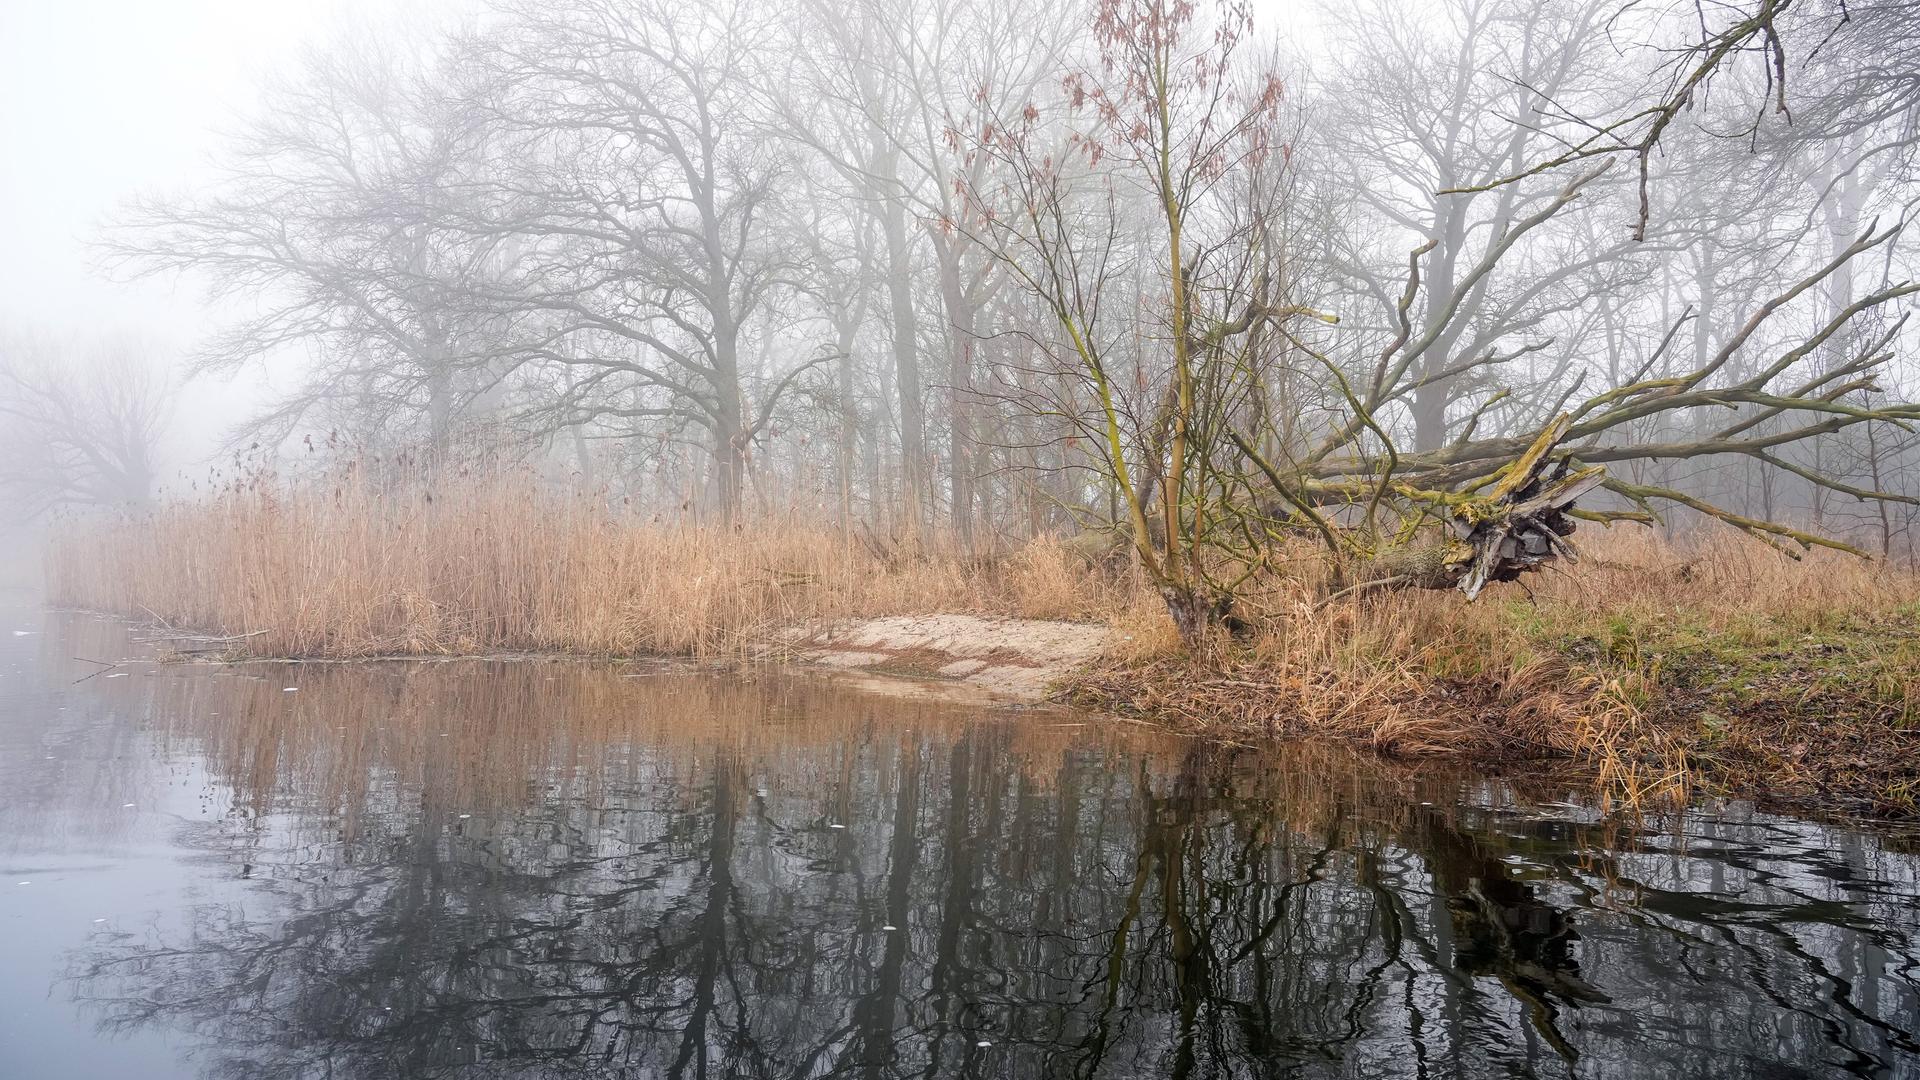 Das Bild zeigt einen Teil des Havel-Ufers, das renaturiert wurde. Steine wurden am Ufer der Unteren Havel durch Sand ersetzt